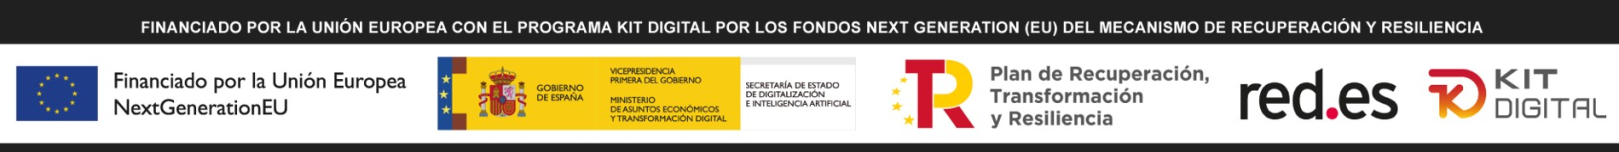 Logos de kit digital, Fondos nextgeneration, logo ministerio de asuntos económicos y transformación digital, red.es.